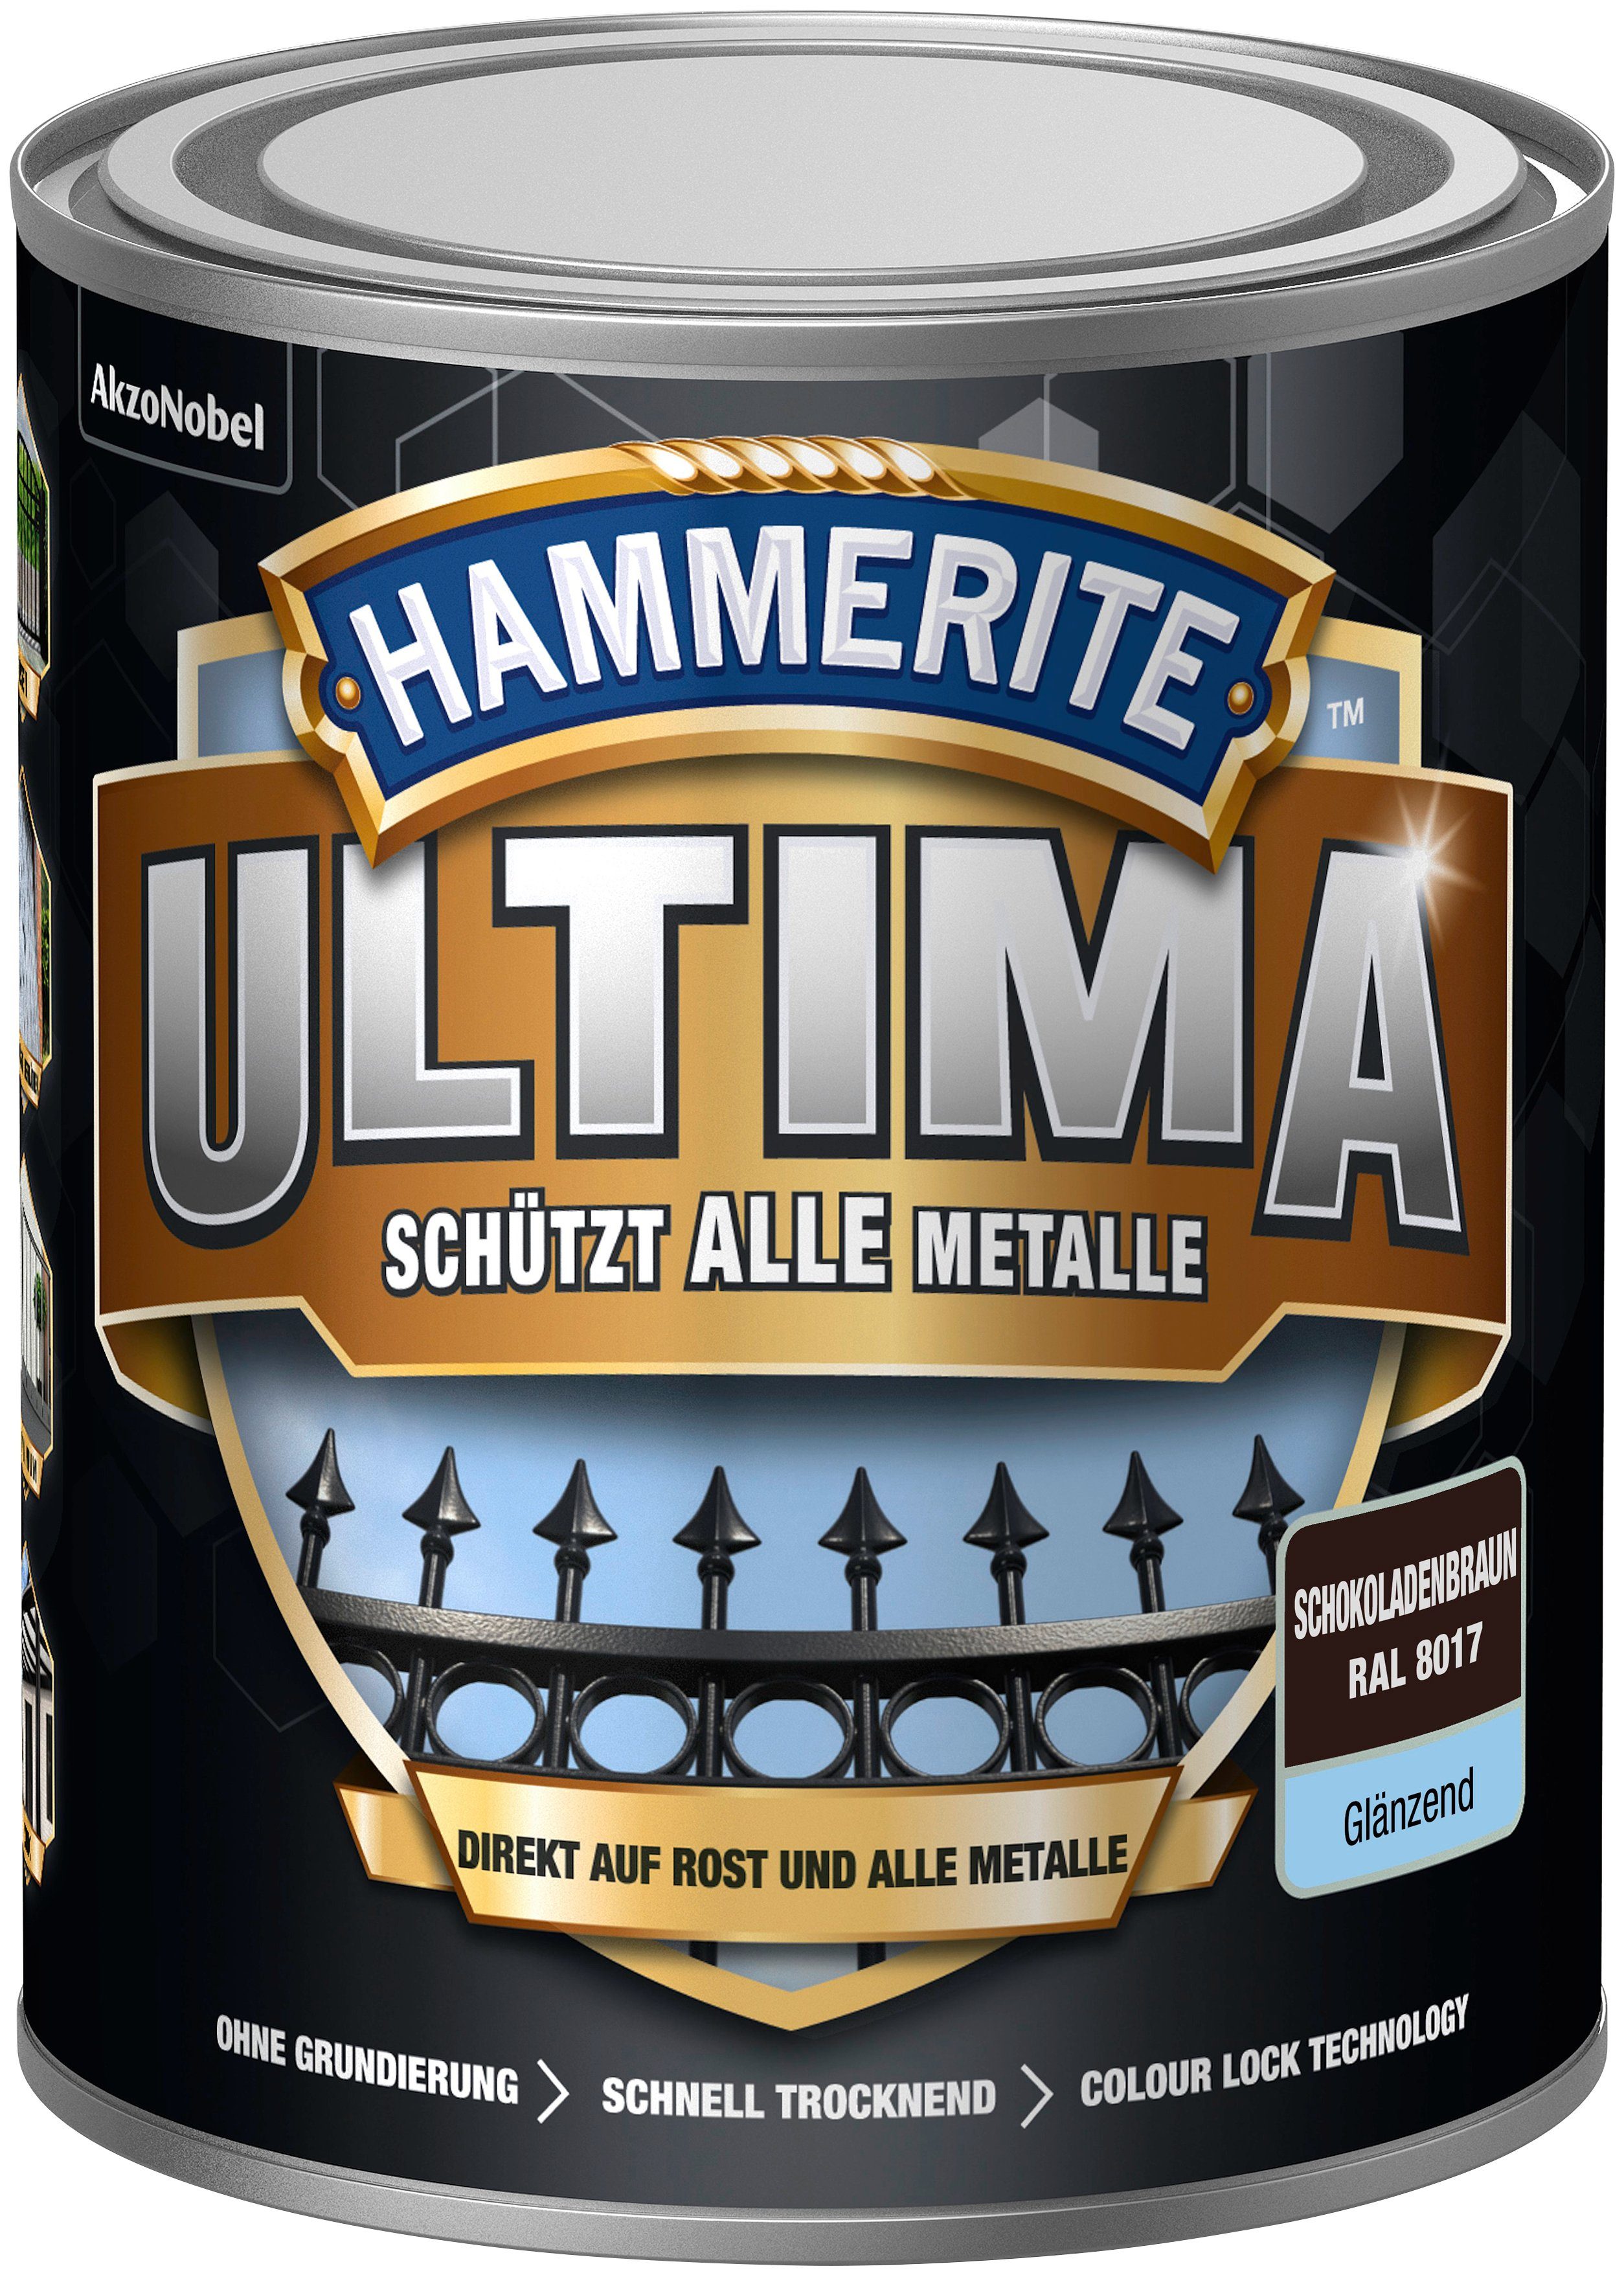 Hammerite  Metallschutzlack ULTIMA schützt alle 3in1, schokoladenbraun 8017, Metalle, RAL glänzend